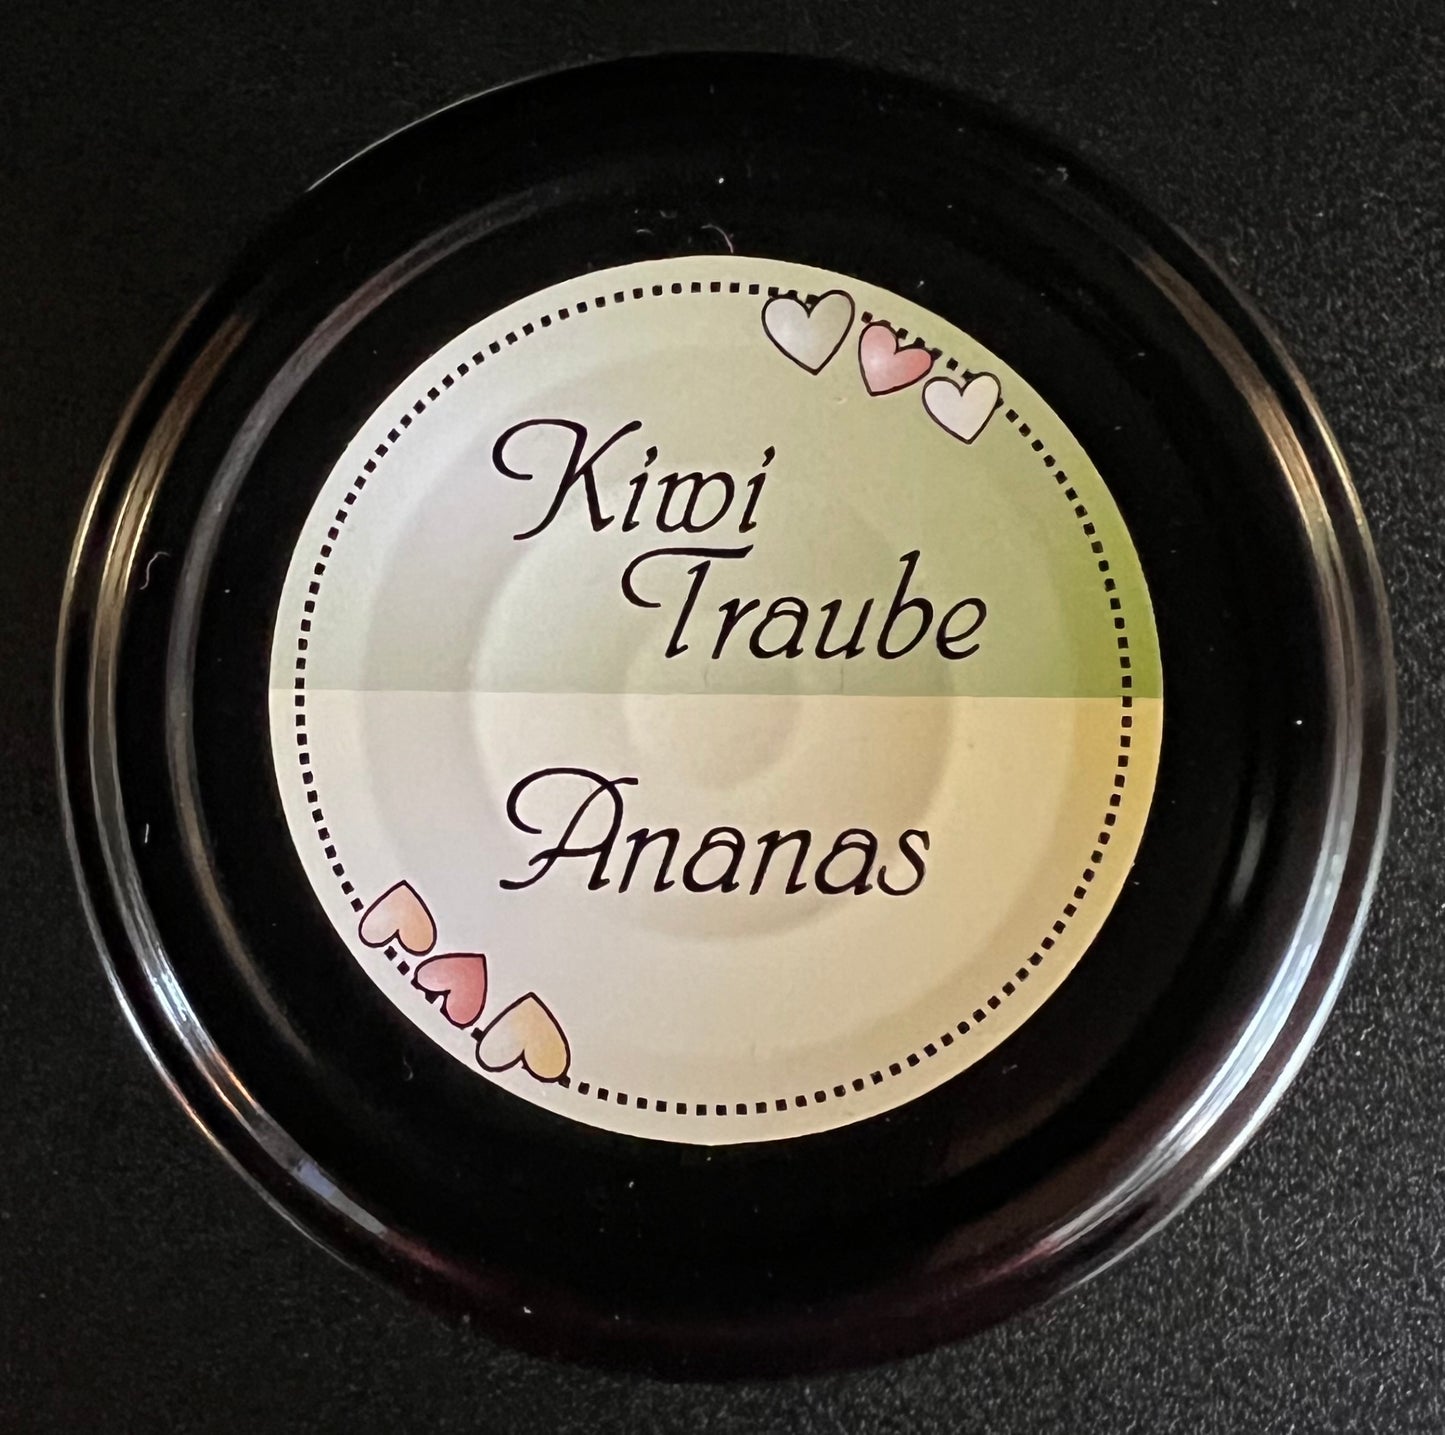 Kiwi-Traube - Ananas